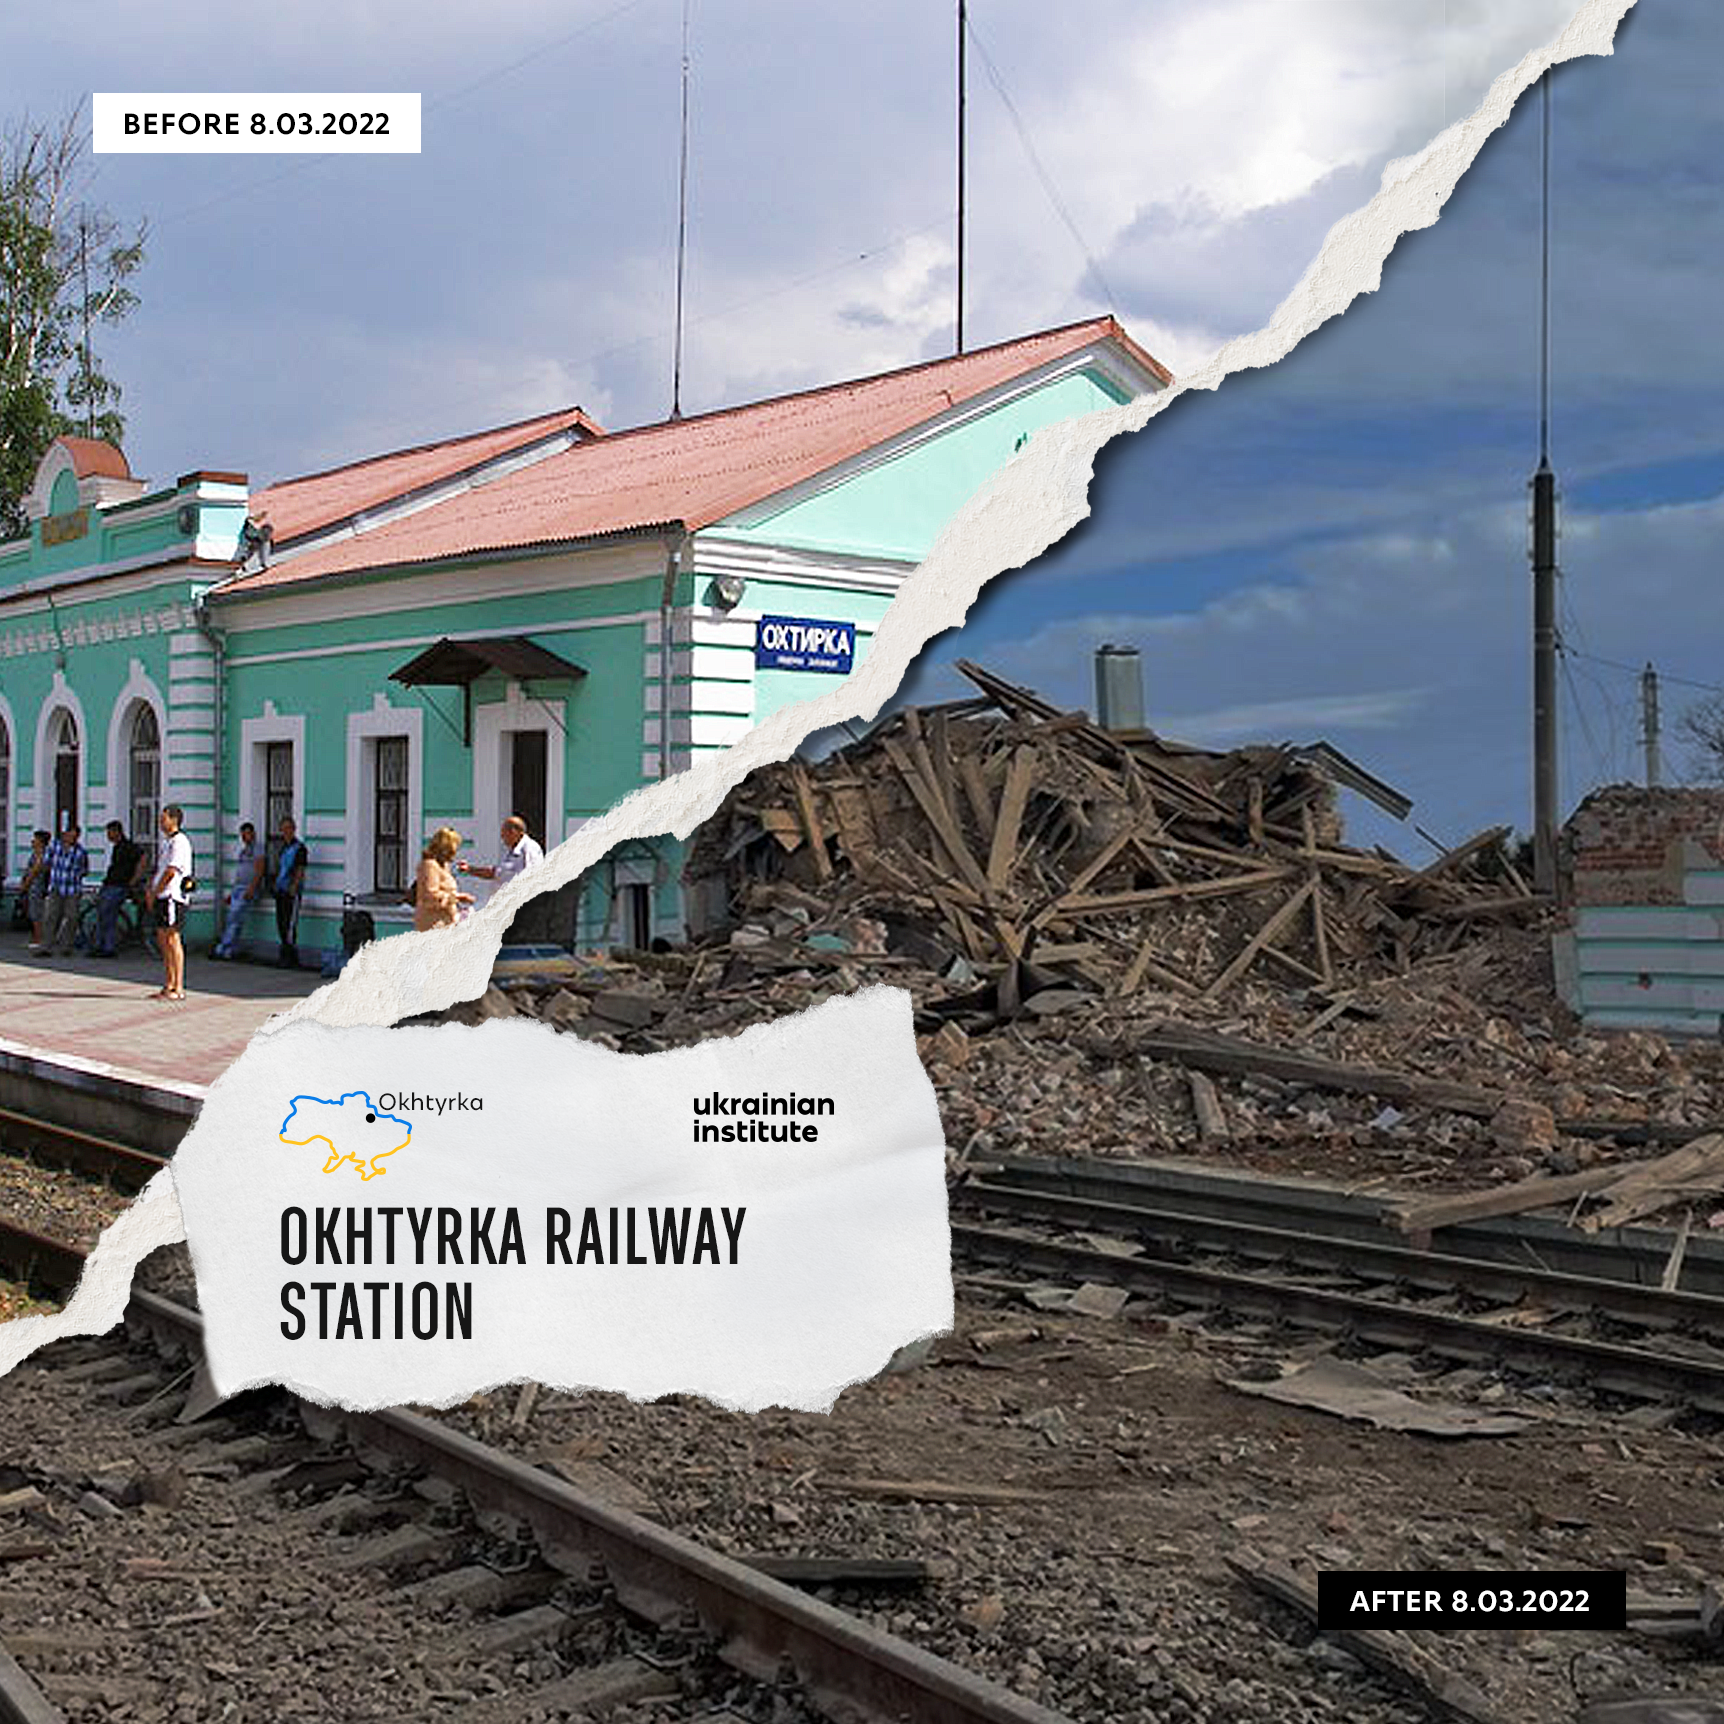 Okhtyrka railway station